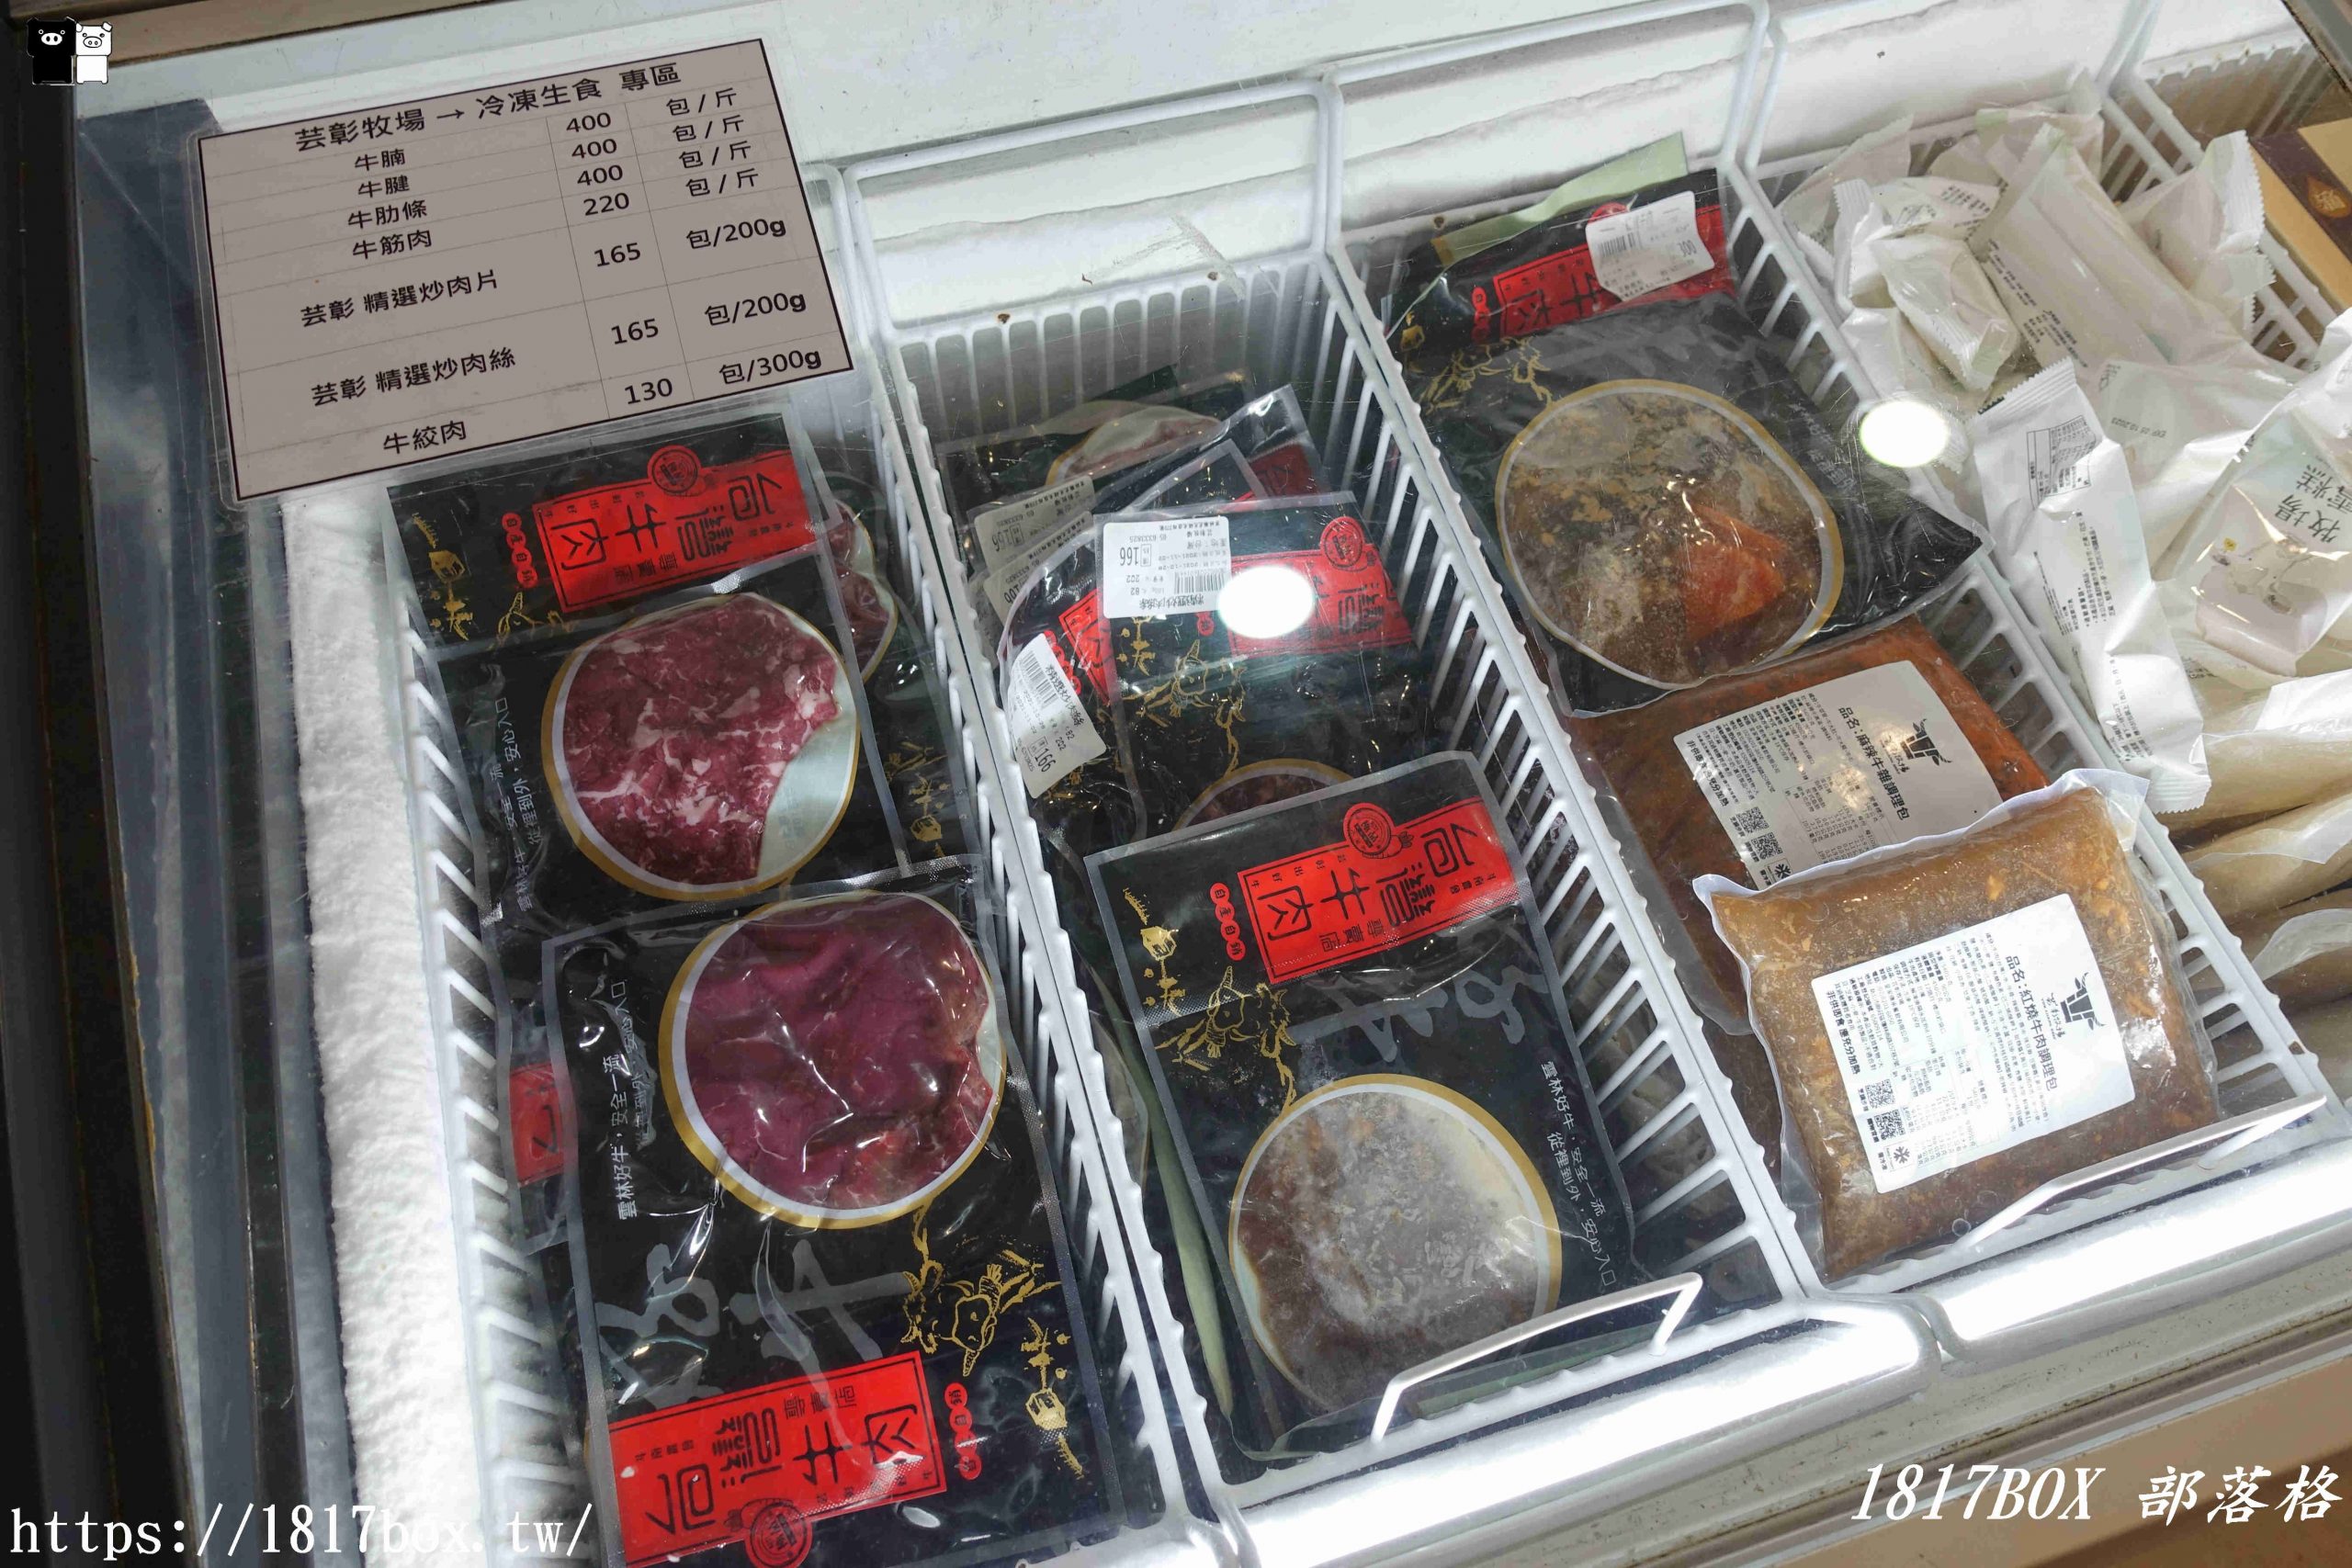 【雲林。虎尾】芸彰牧場台灣牛肉專賣店。每日現切溫體牛肉。從牧場到餐桌。產地直送 @1817BOX部落格